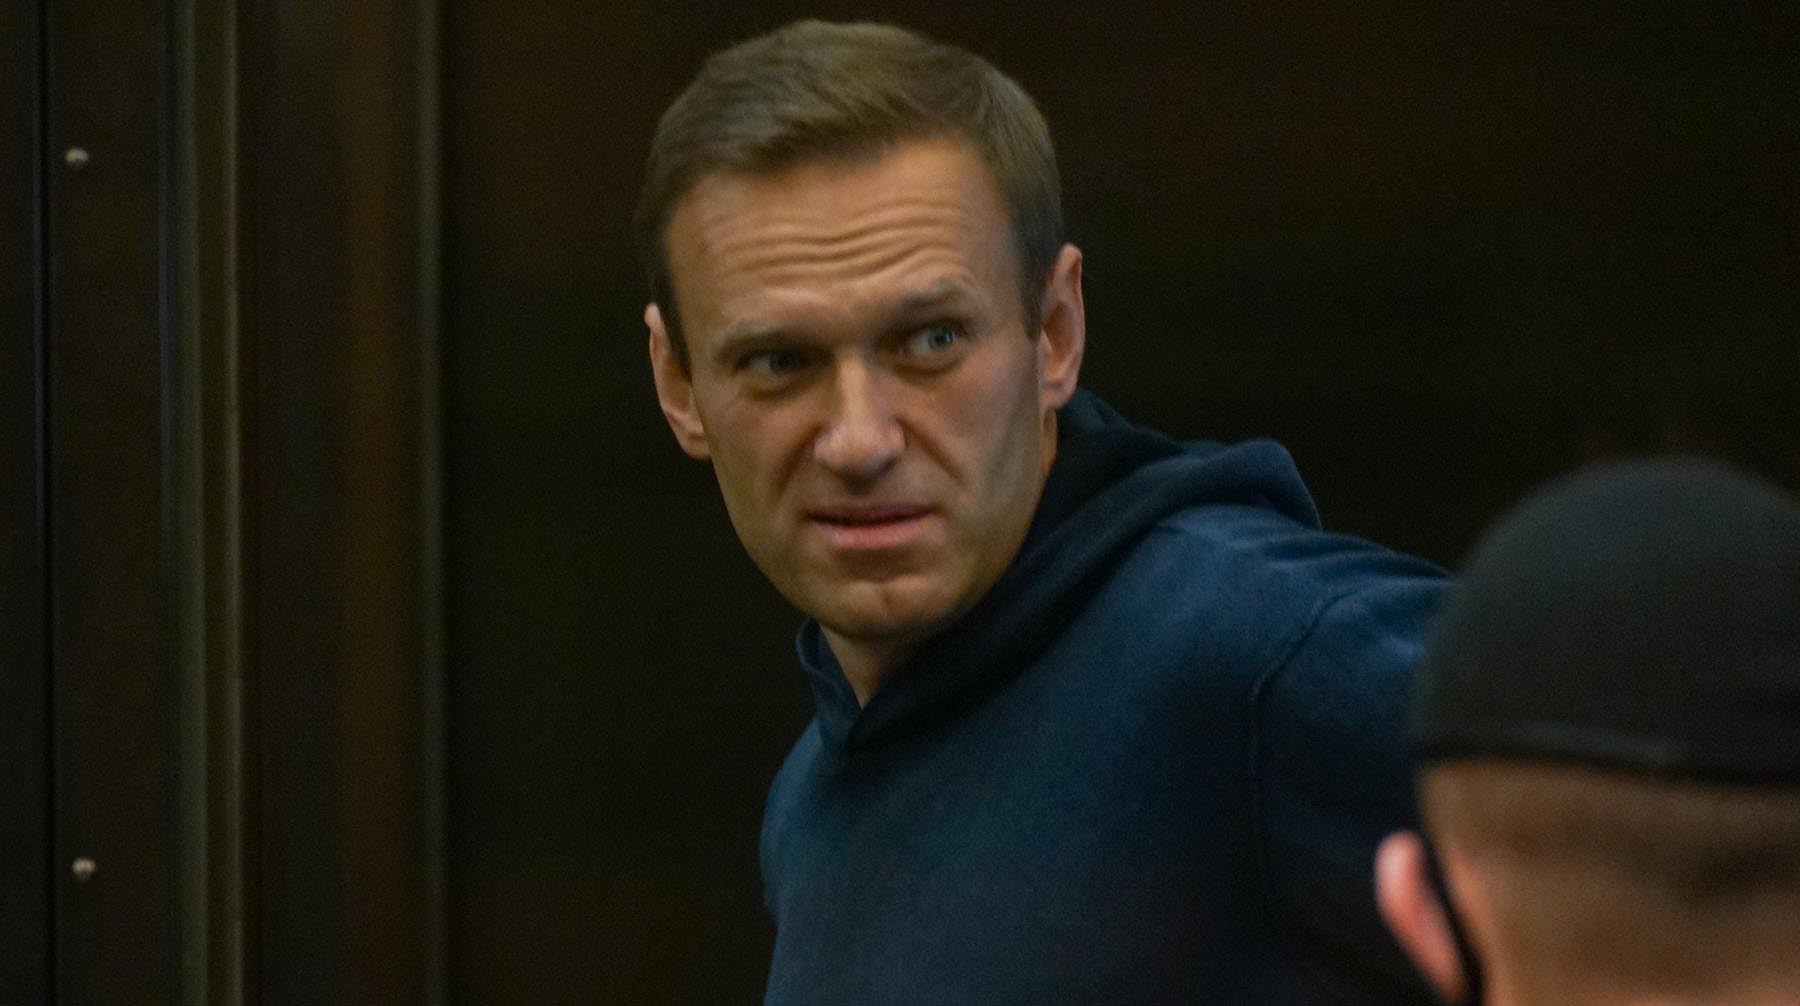 Dailystorm - YouTube заблокировал видео разговора Навального с его предполагаемым убийцей